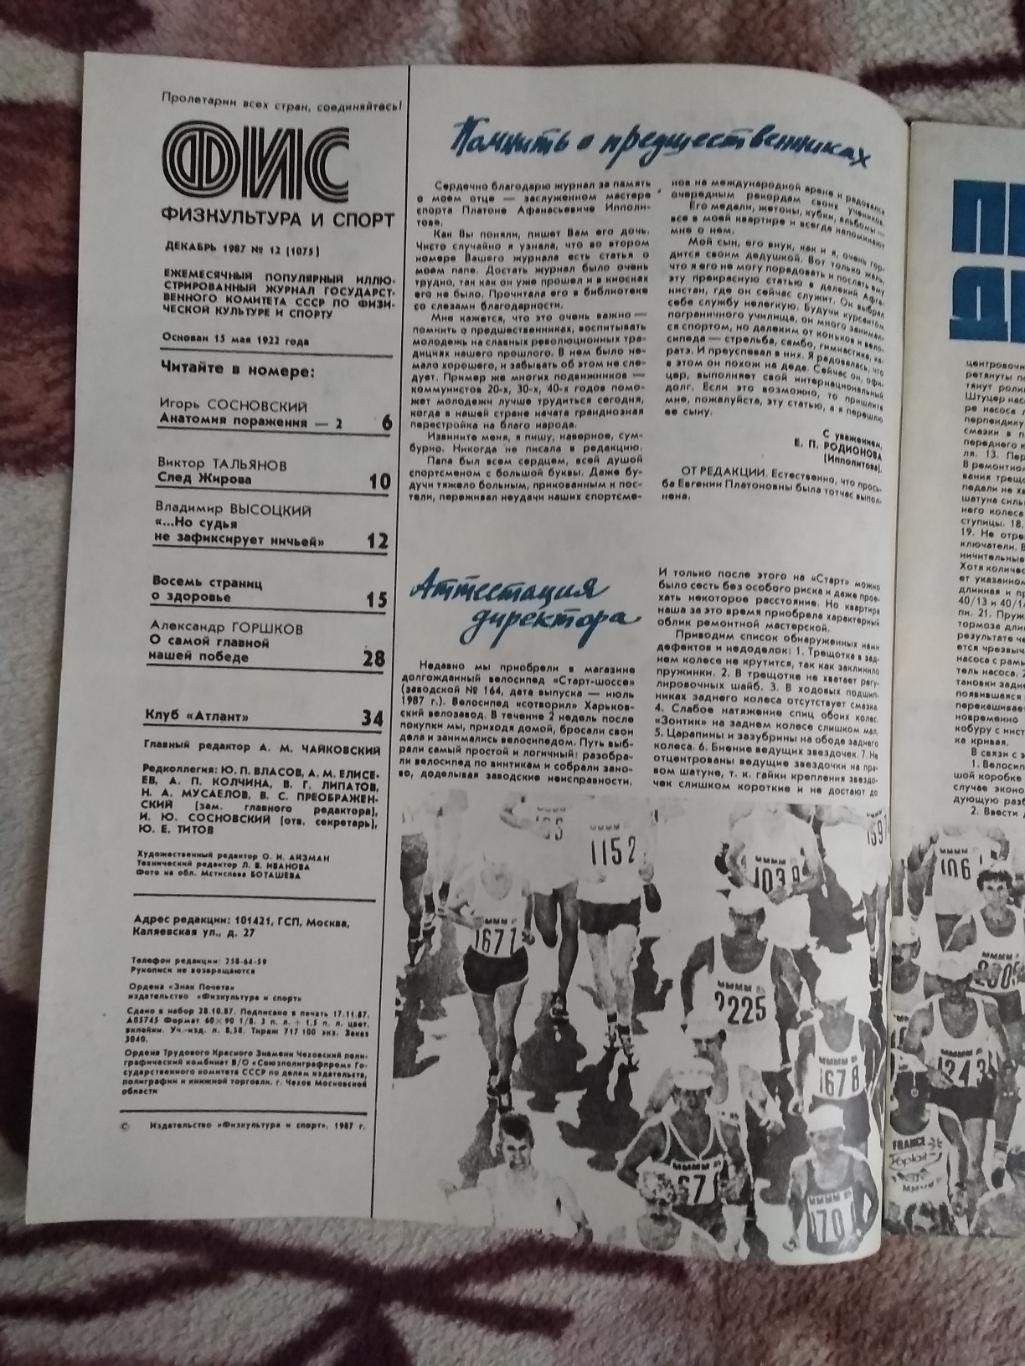 Журнал.Физкультура и спорт № 12 1987 г. (ФиС). 1